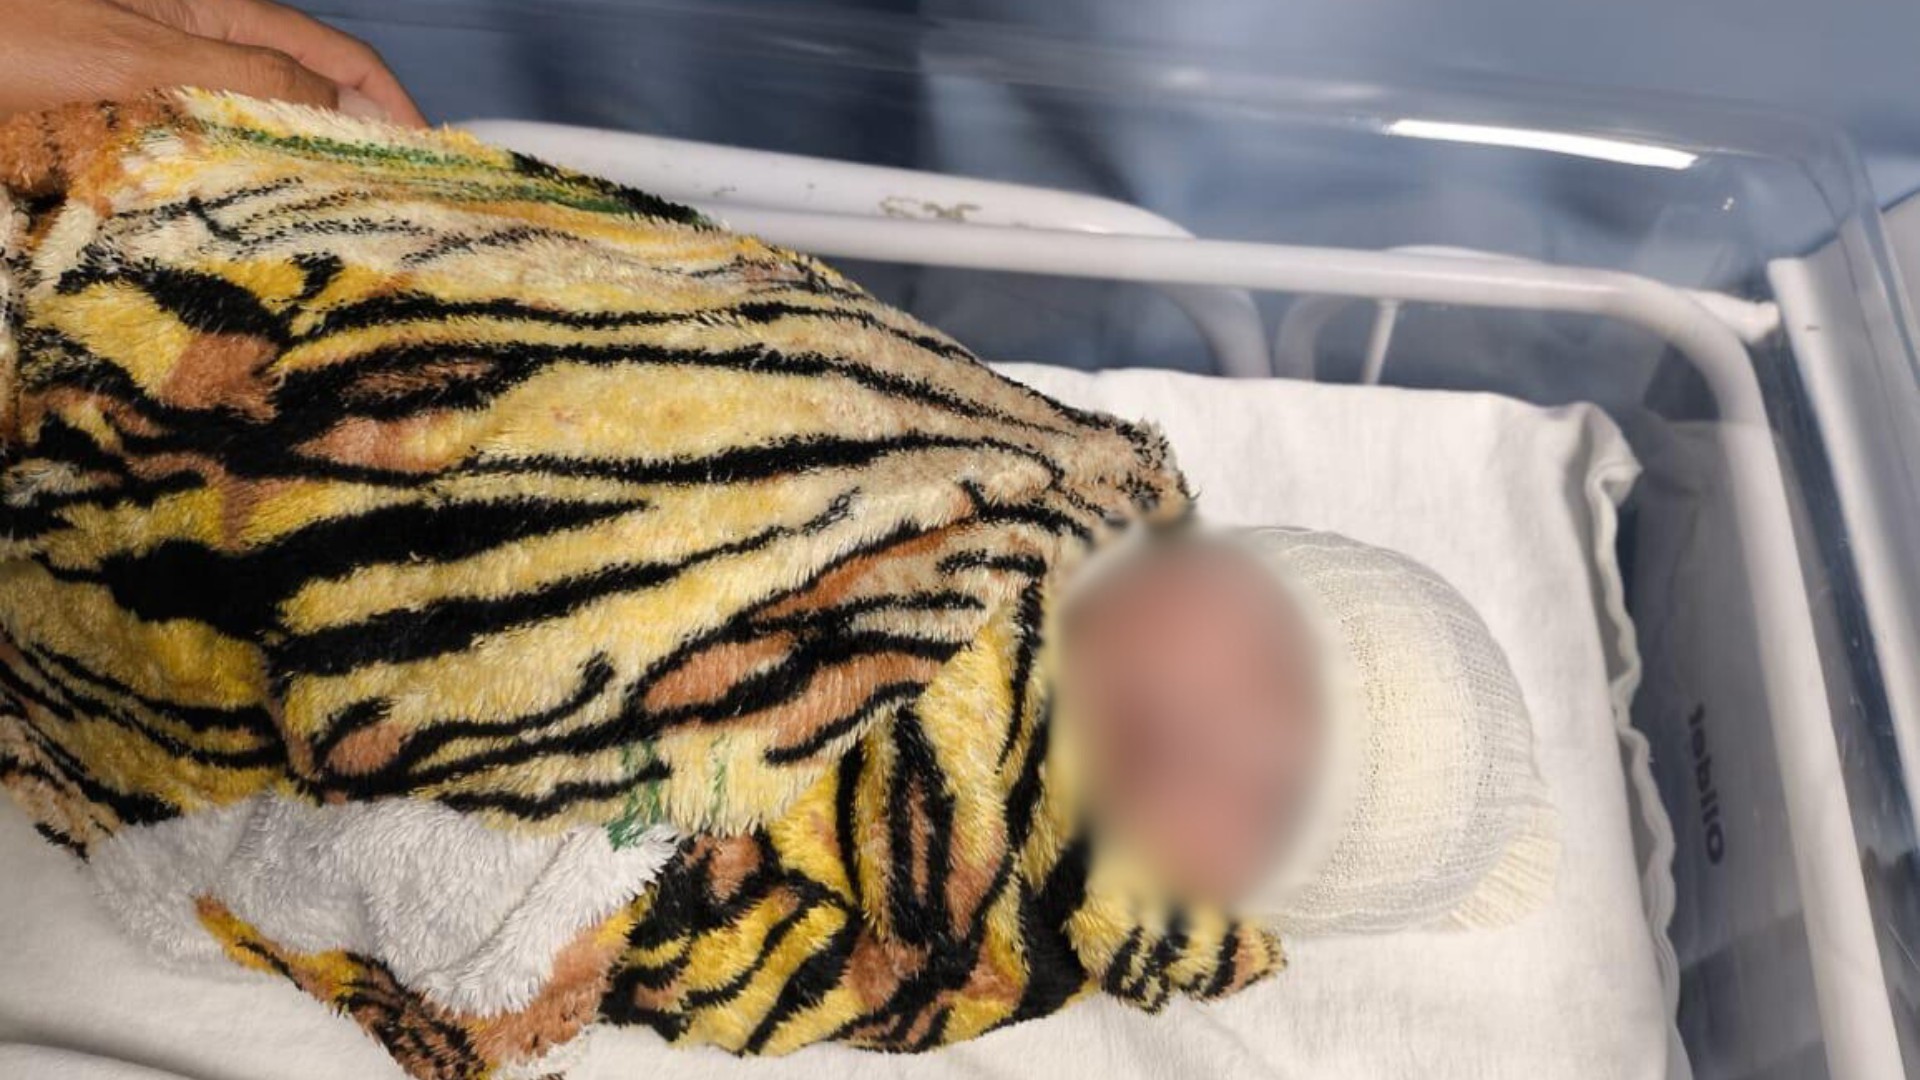 Recém-nascida levada por médica de hospital de Uberlândia é encontrada em Goiás, e mulher é presa